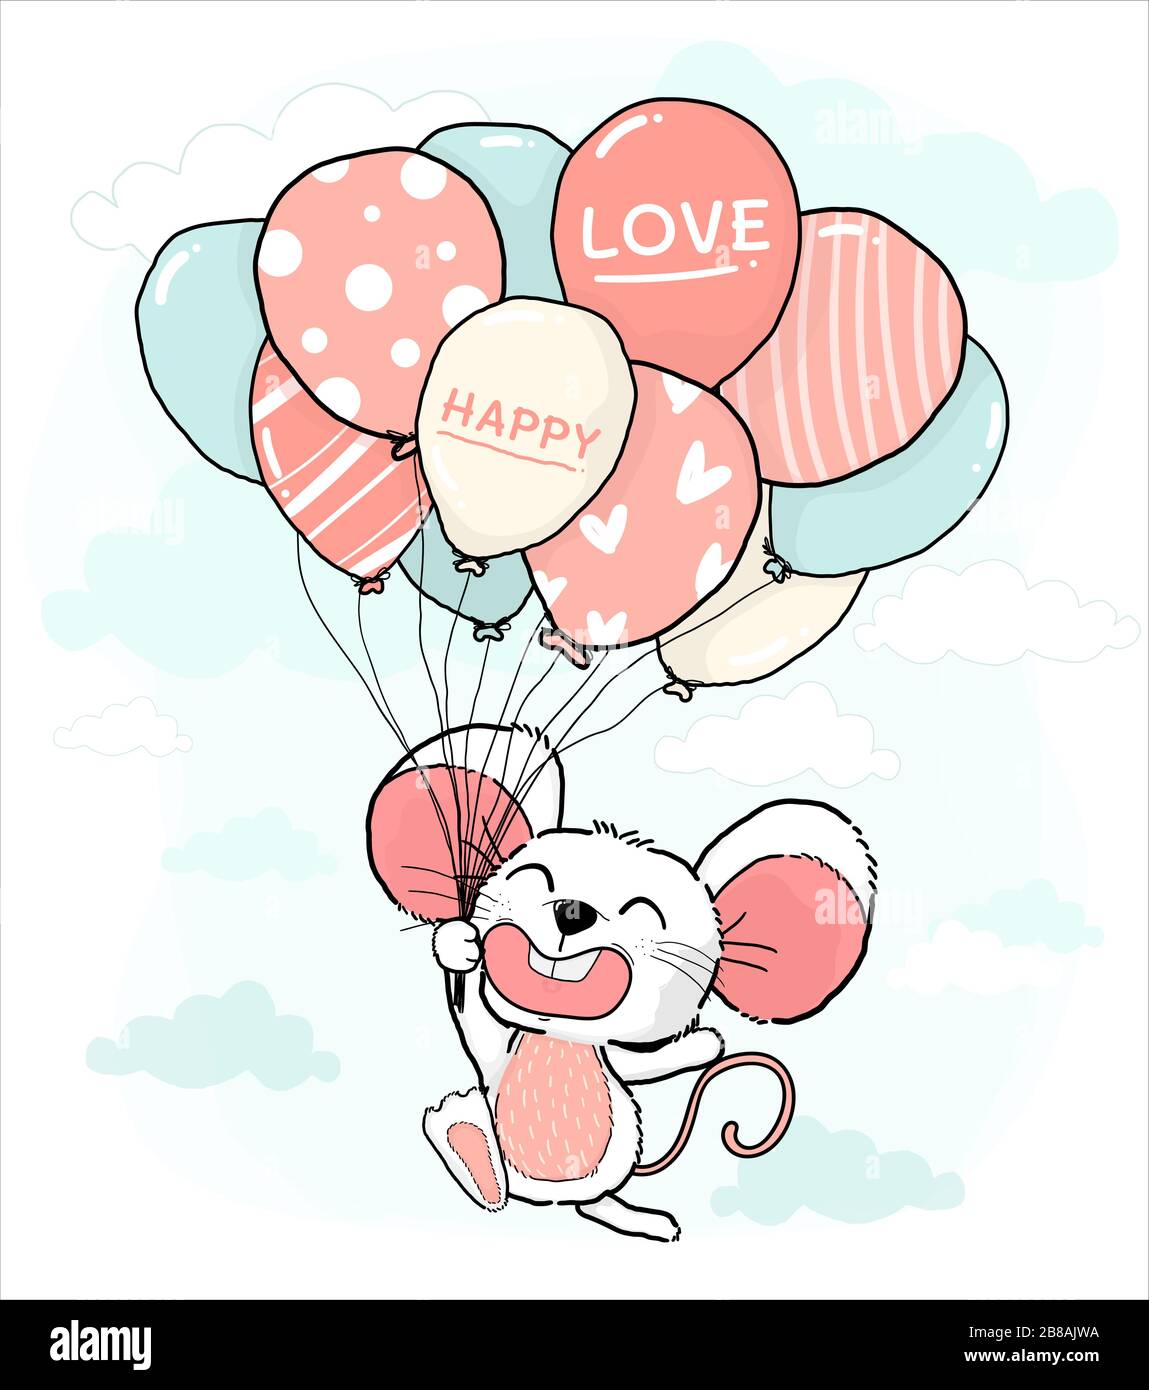 Fröhliches Lächeln niedliche kleine Mäuse, die den Brunch von Pastellballons am blauen Himmel halten, Umriss Zeichnung Charakter Tierfigur Cartoon, Idee für Grußkarte, Stock Vektor